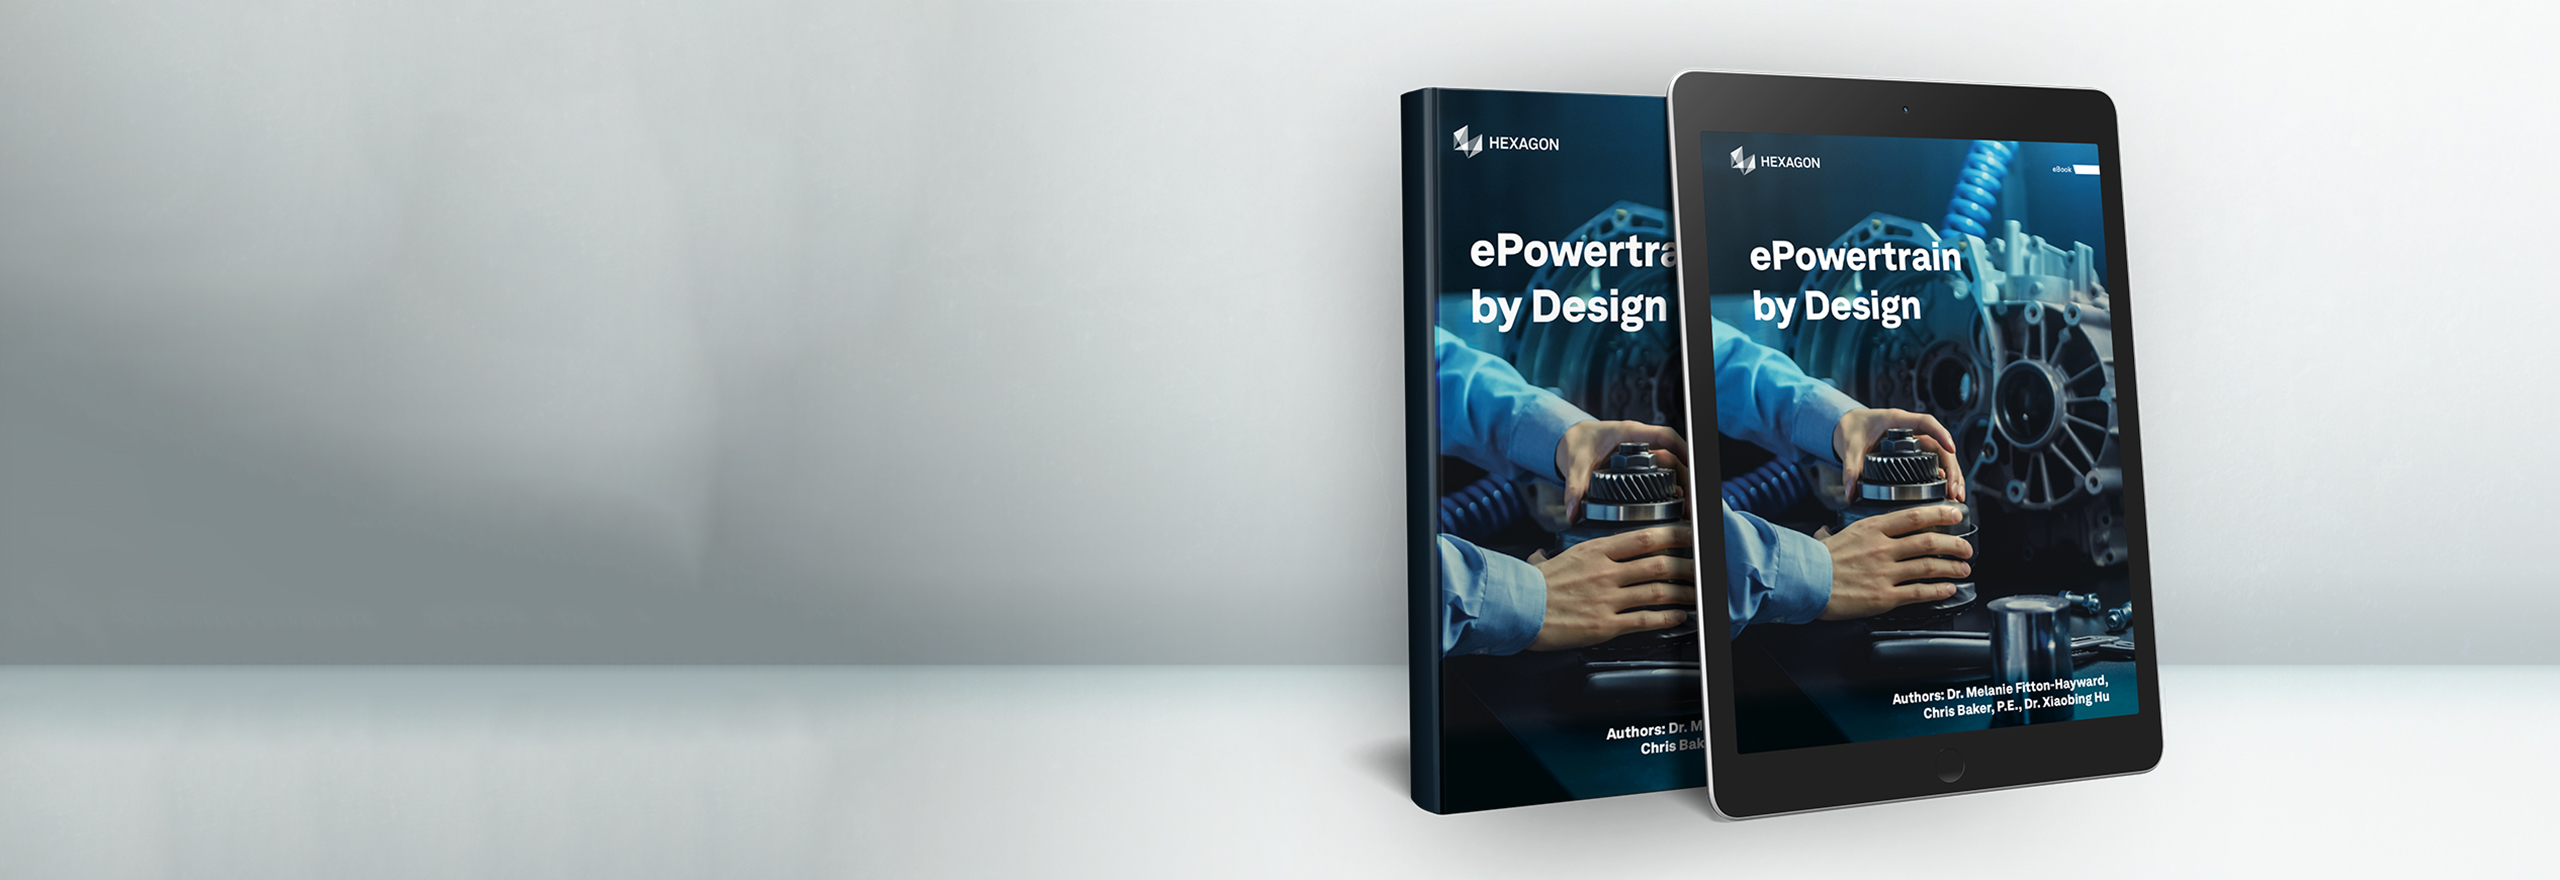 ePowertrain by design（設計による電動パワートレイン）の電子書籍をタブレットパネルに表示